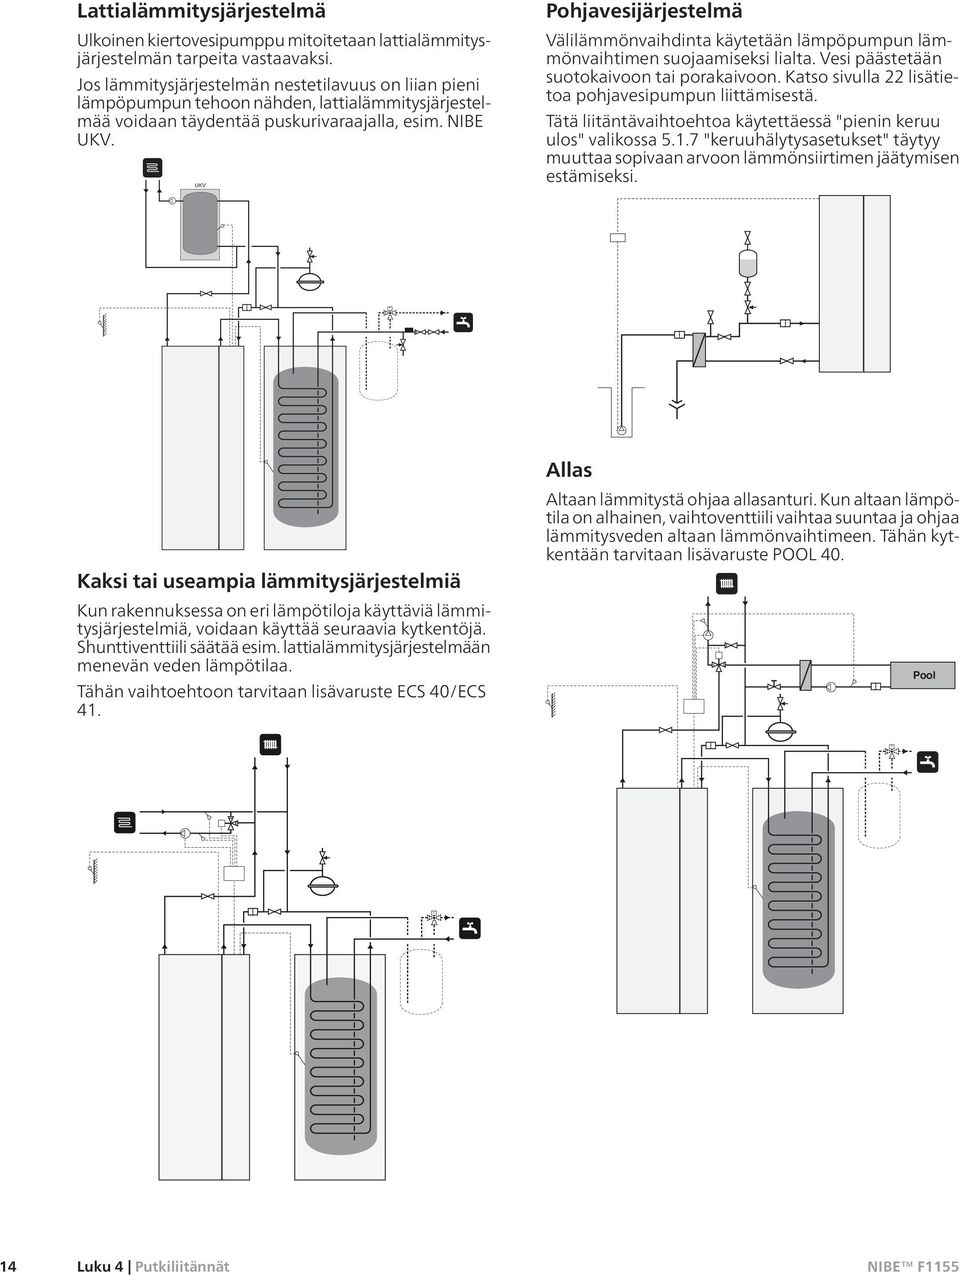 UKV Pohjavesijärjestelmä Välilämmönvaihdinta käytetään lämpöpumpun lämmönvaihtimen suojaamiseksi lialta. Vesi päästetään suotokaivoon tai porakaivoon.